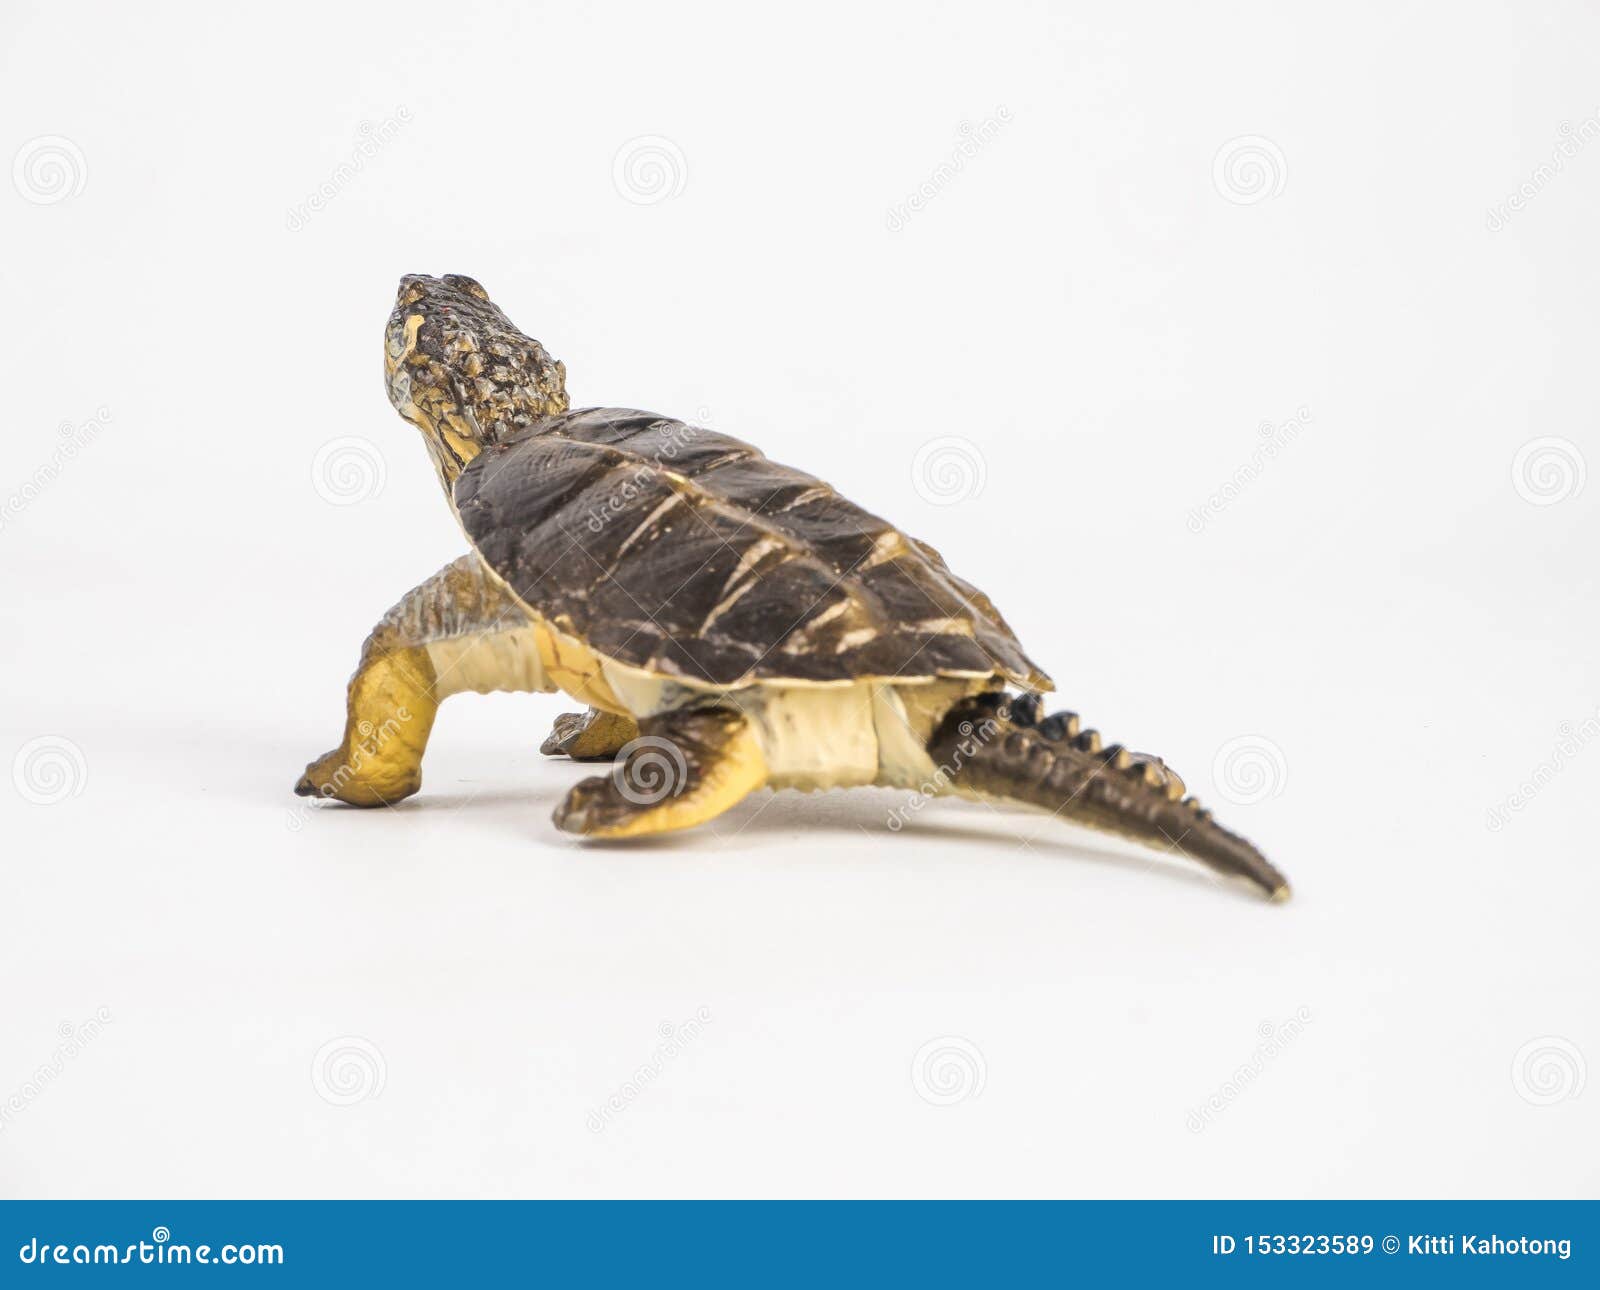 Turtle on white background stock image. Image of slow - 153323589